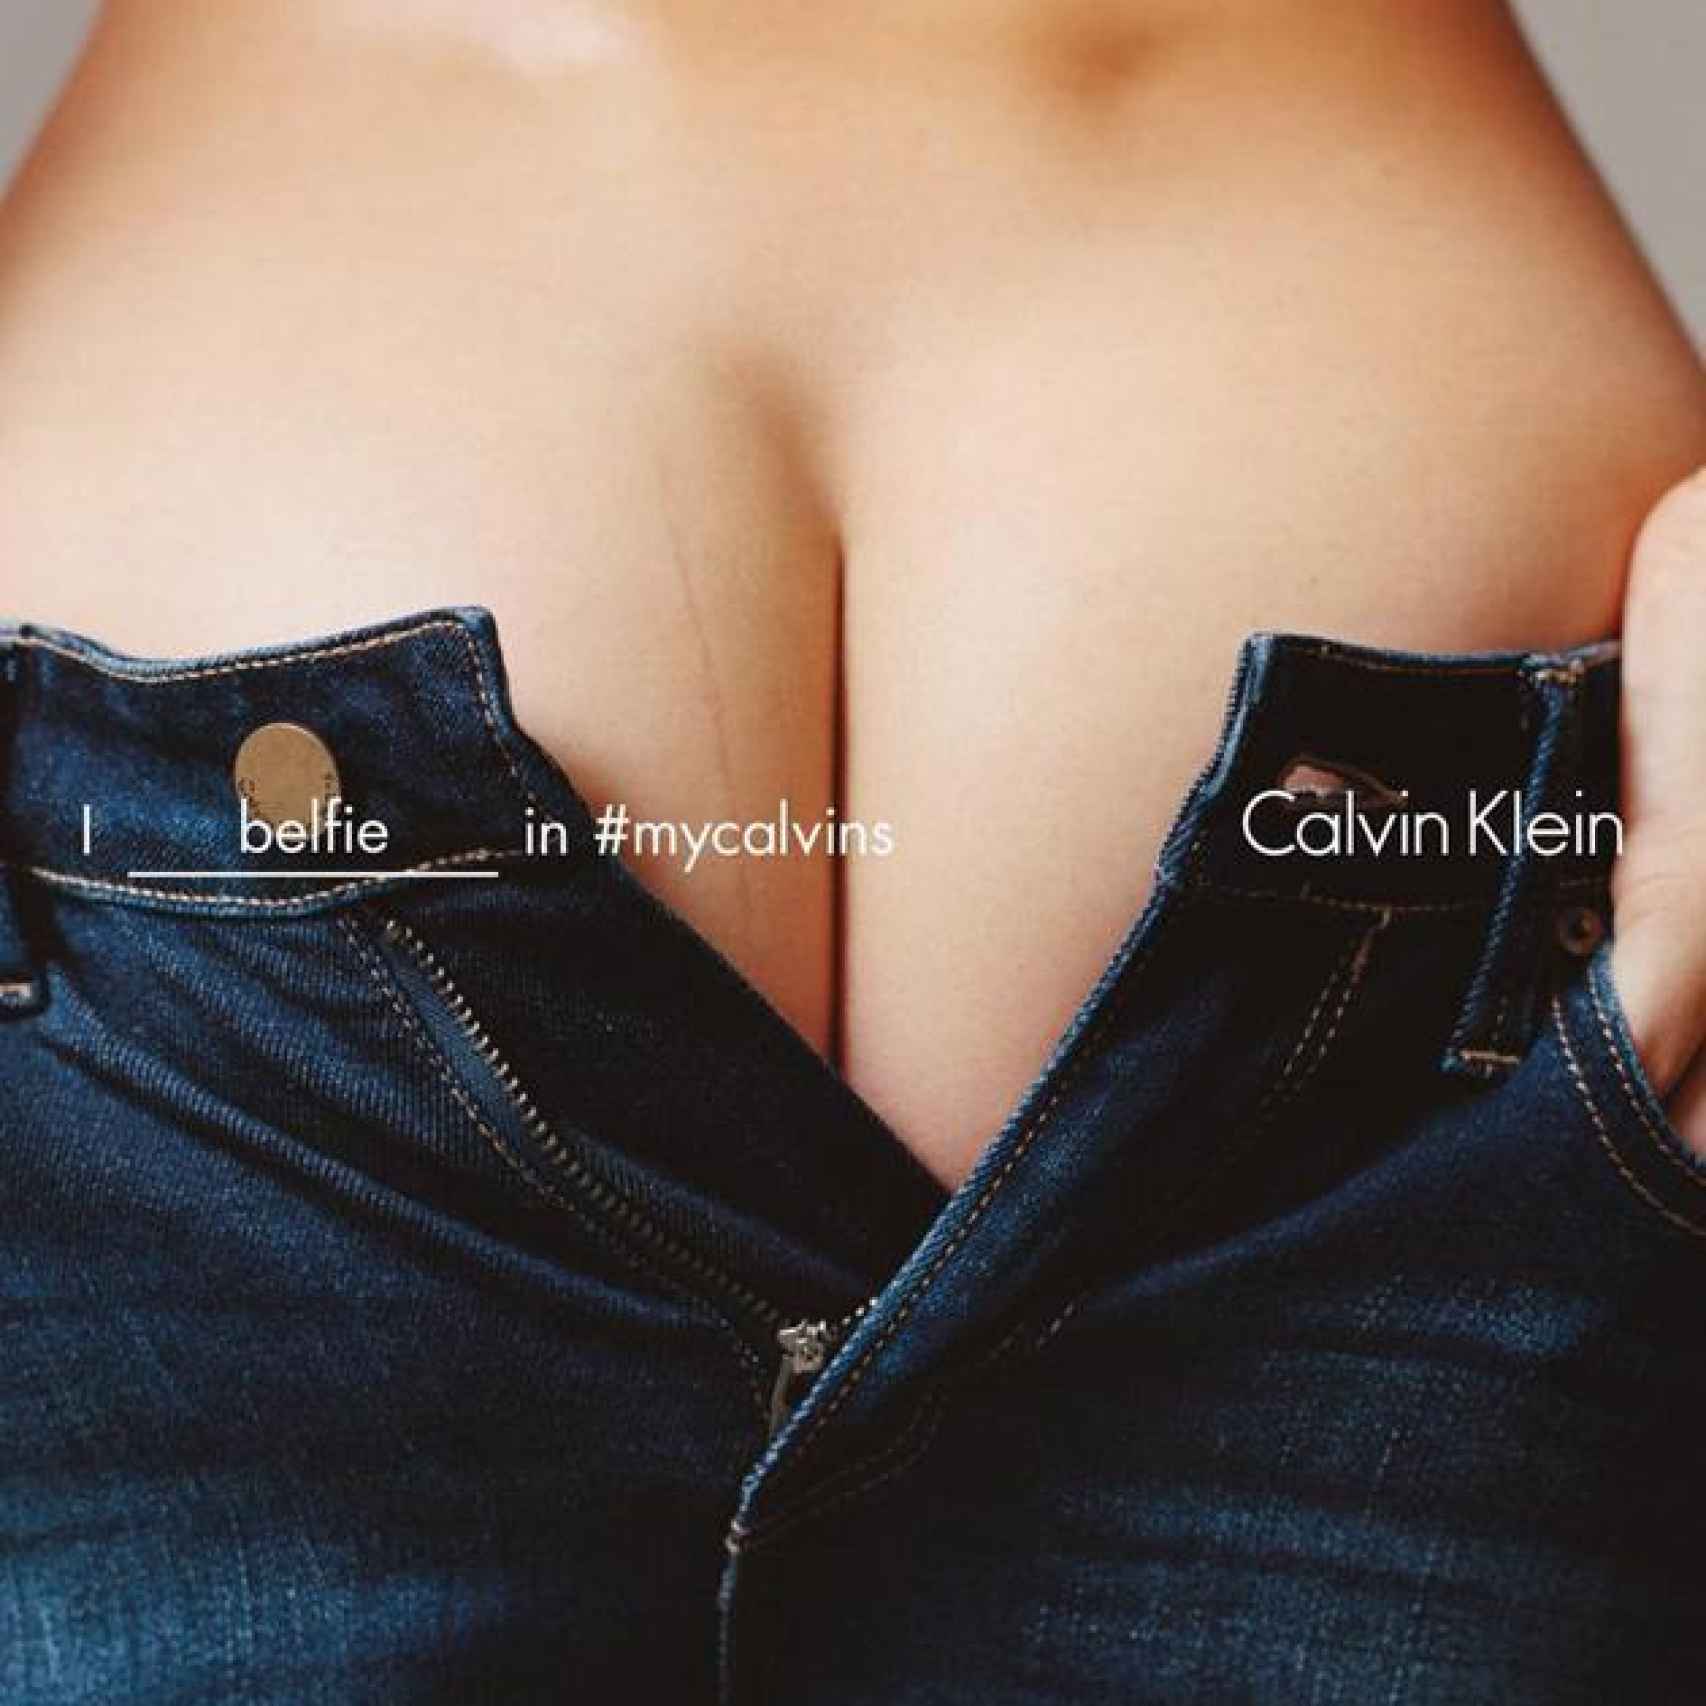 El belfie en la campaña de Calvin Klein #mycalvins